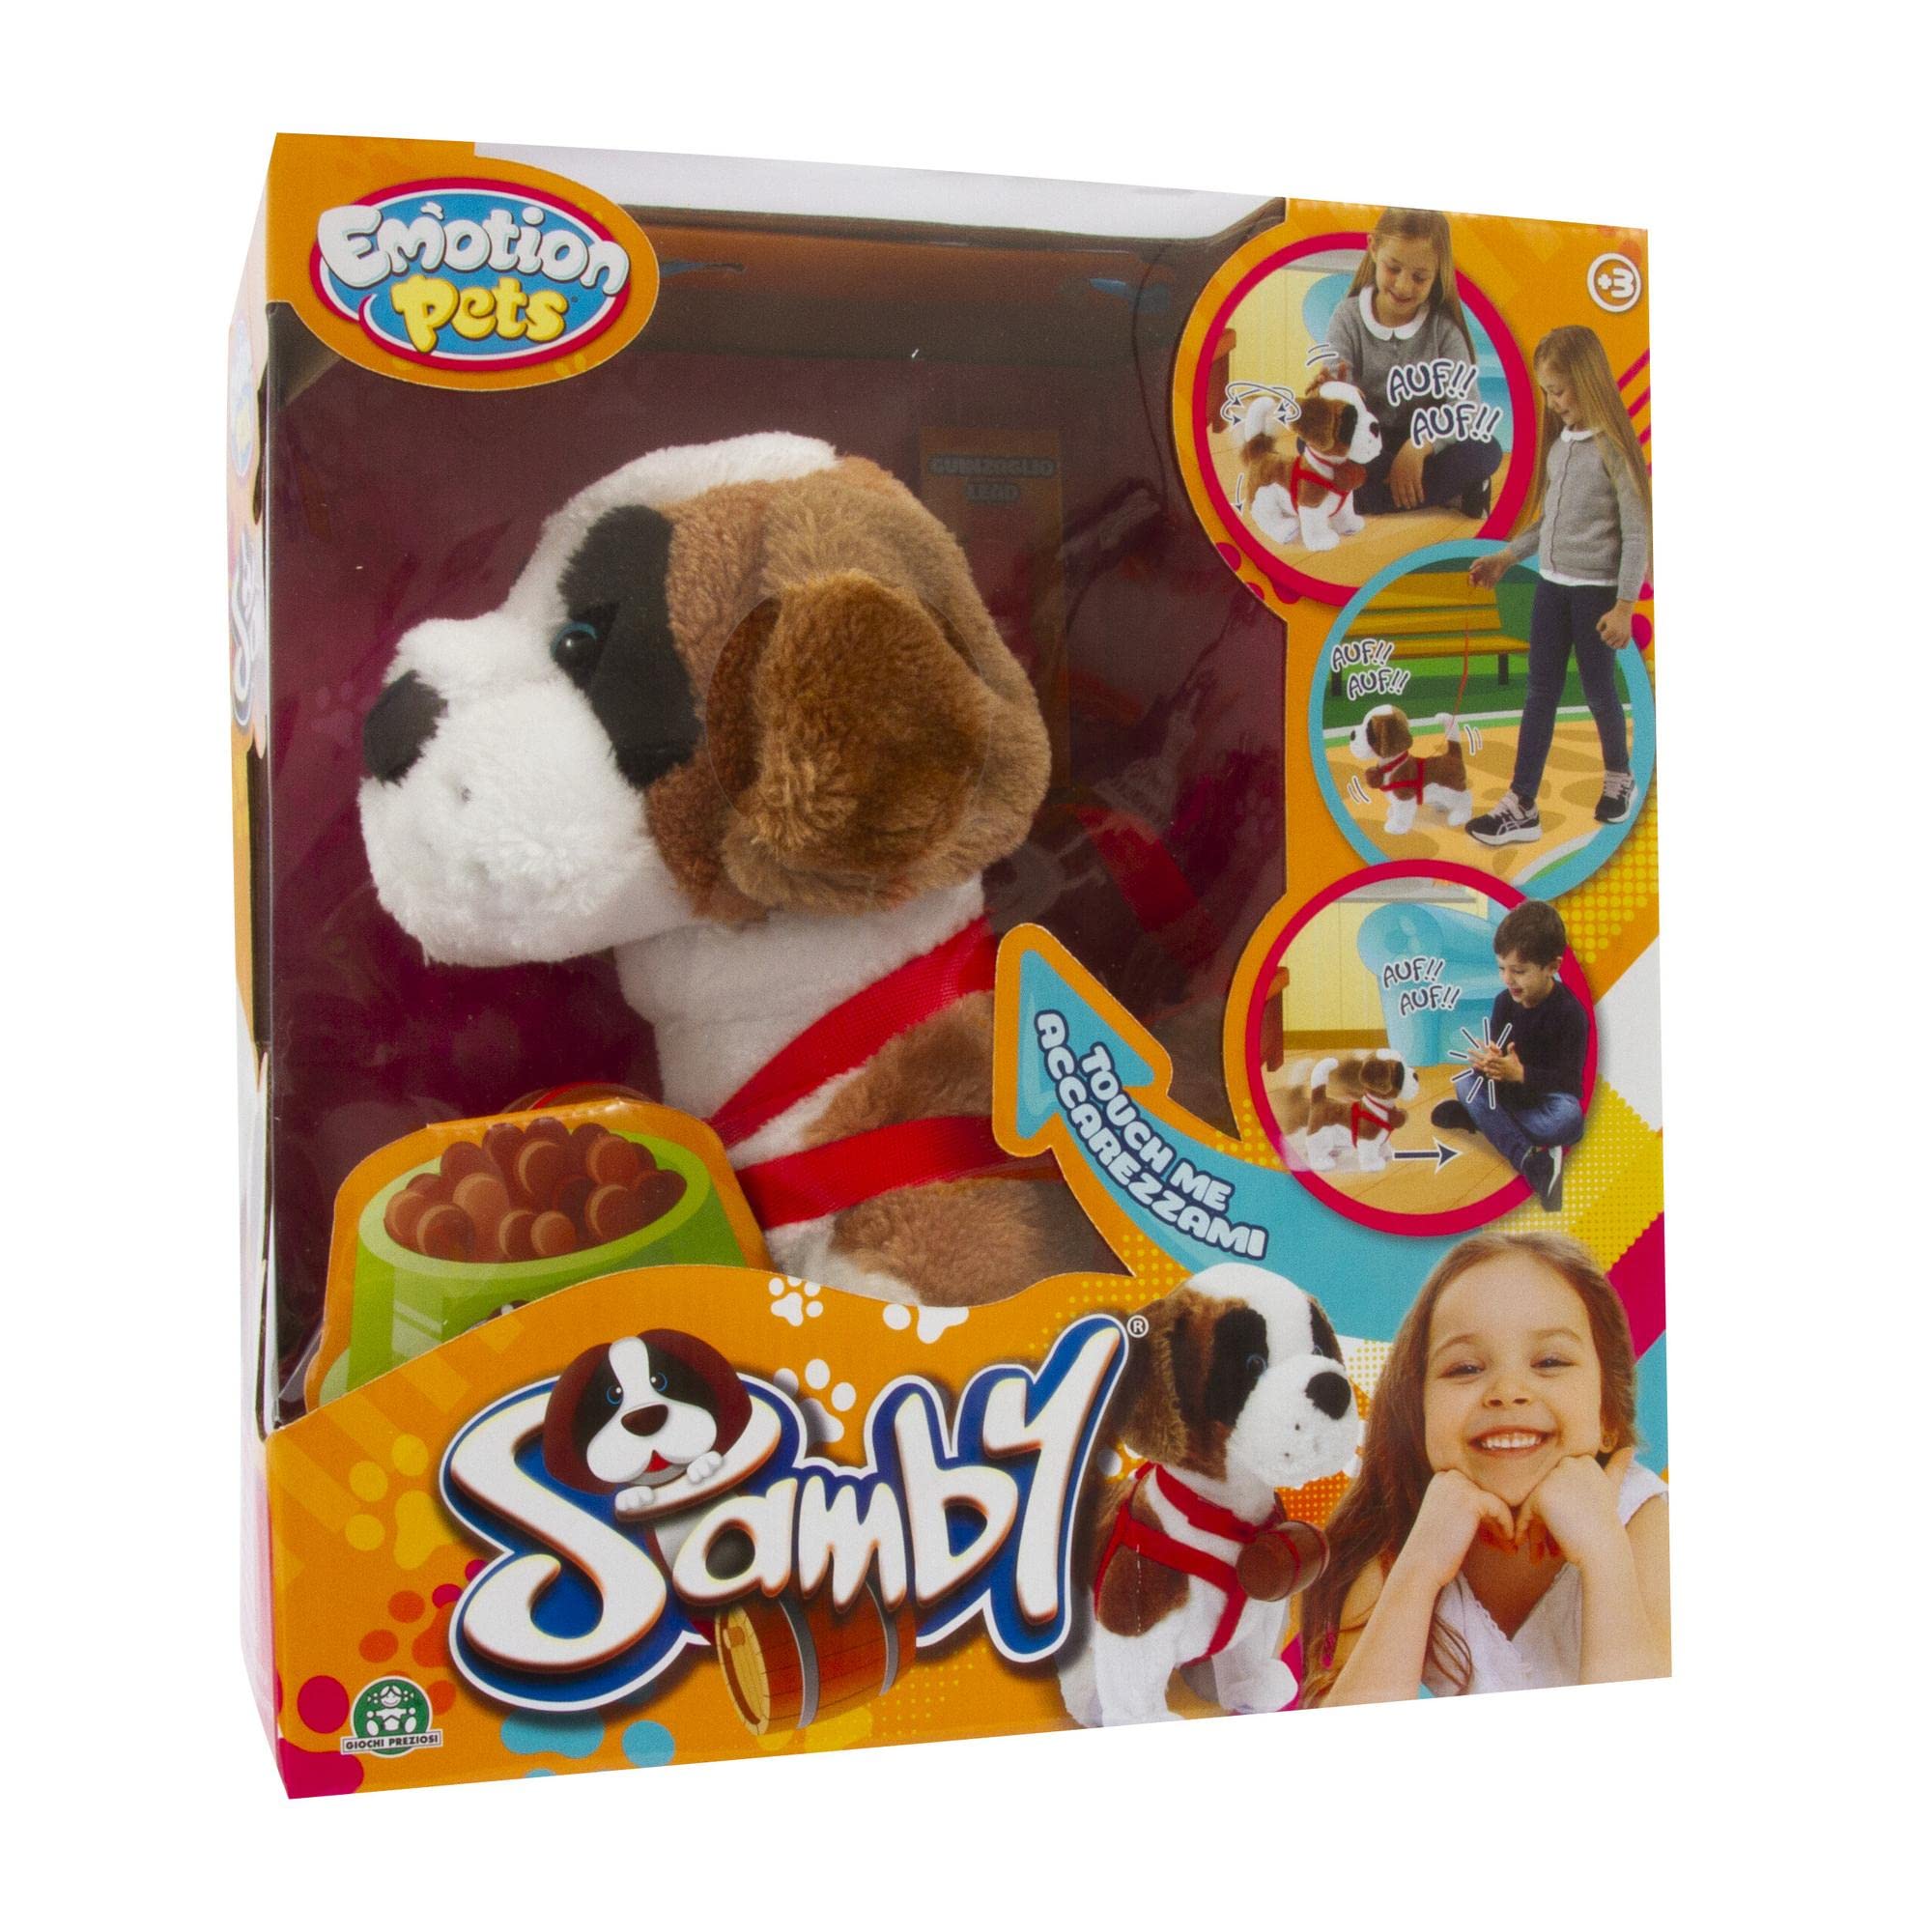 Merchandising Giochi Preziosi: Emotion Pets - Samby NUOVO SIGILLATO, EDIZIONE DEL 12/10/2022 SUBITO DISPONIBILE